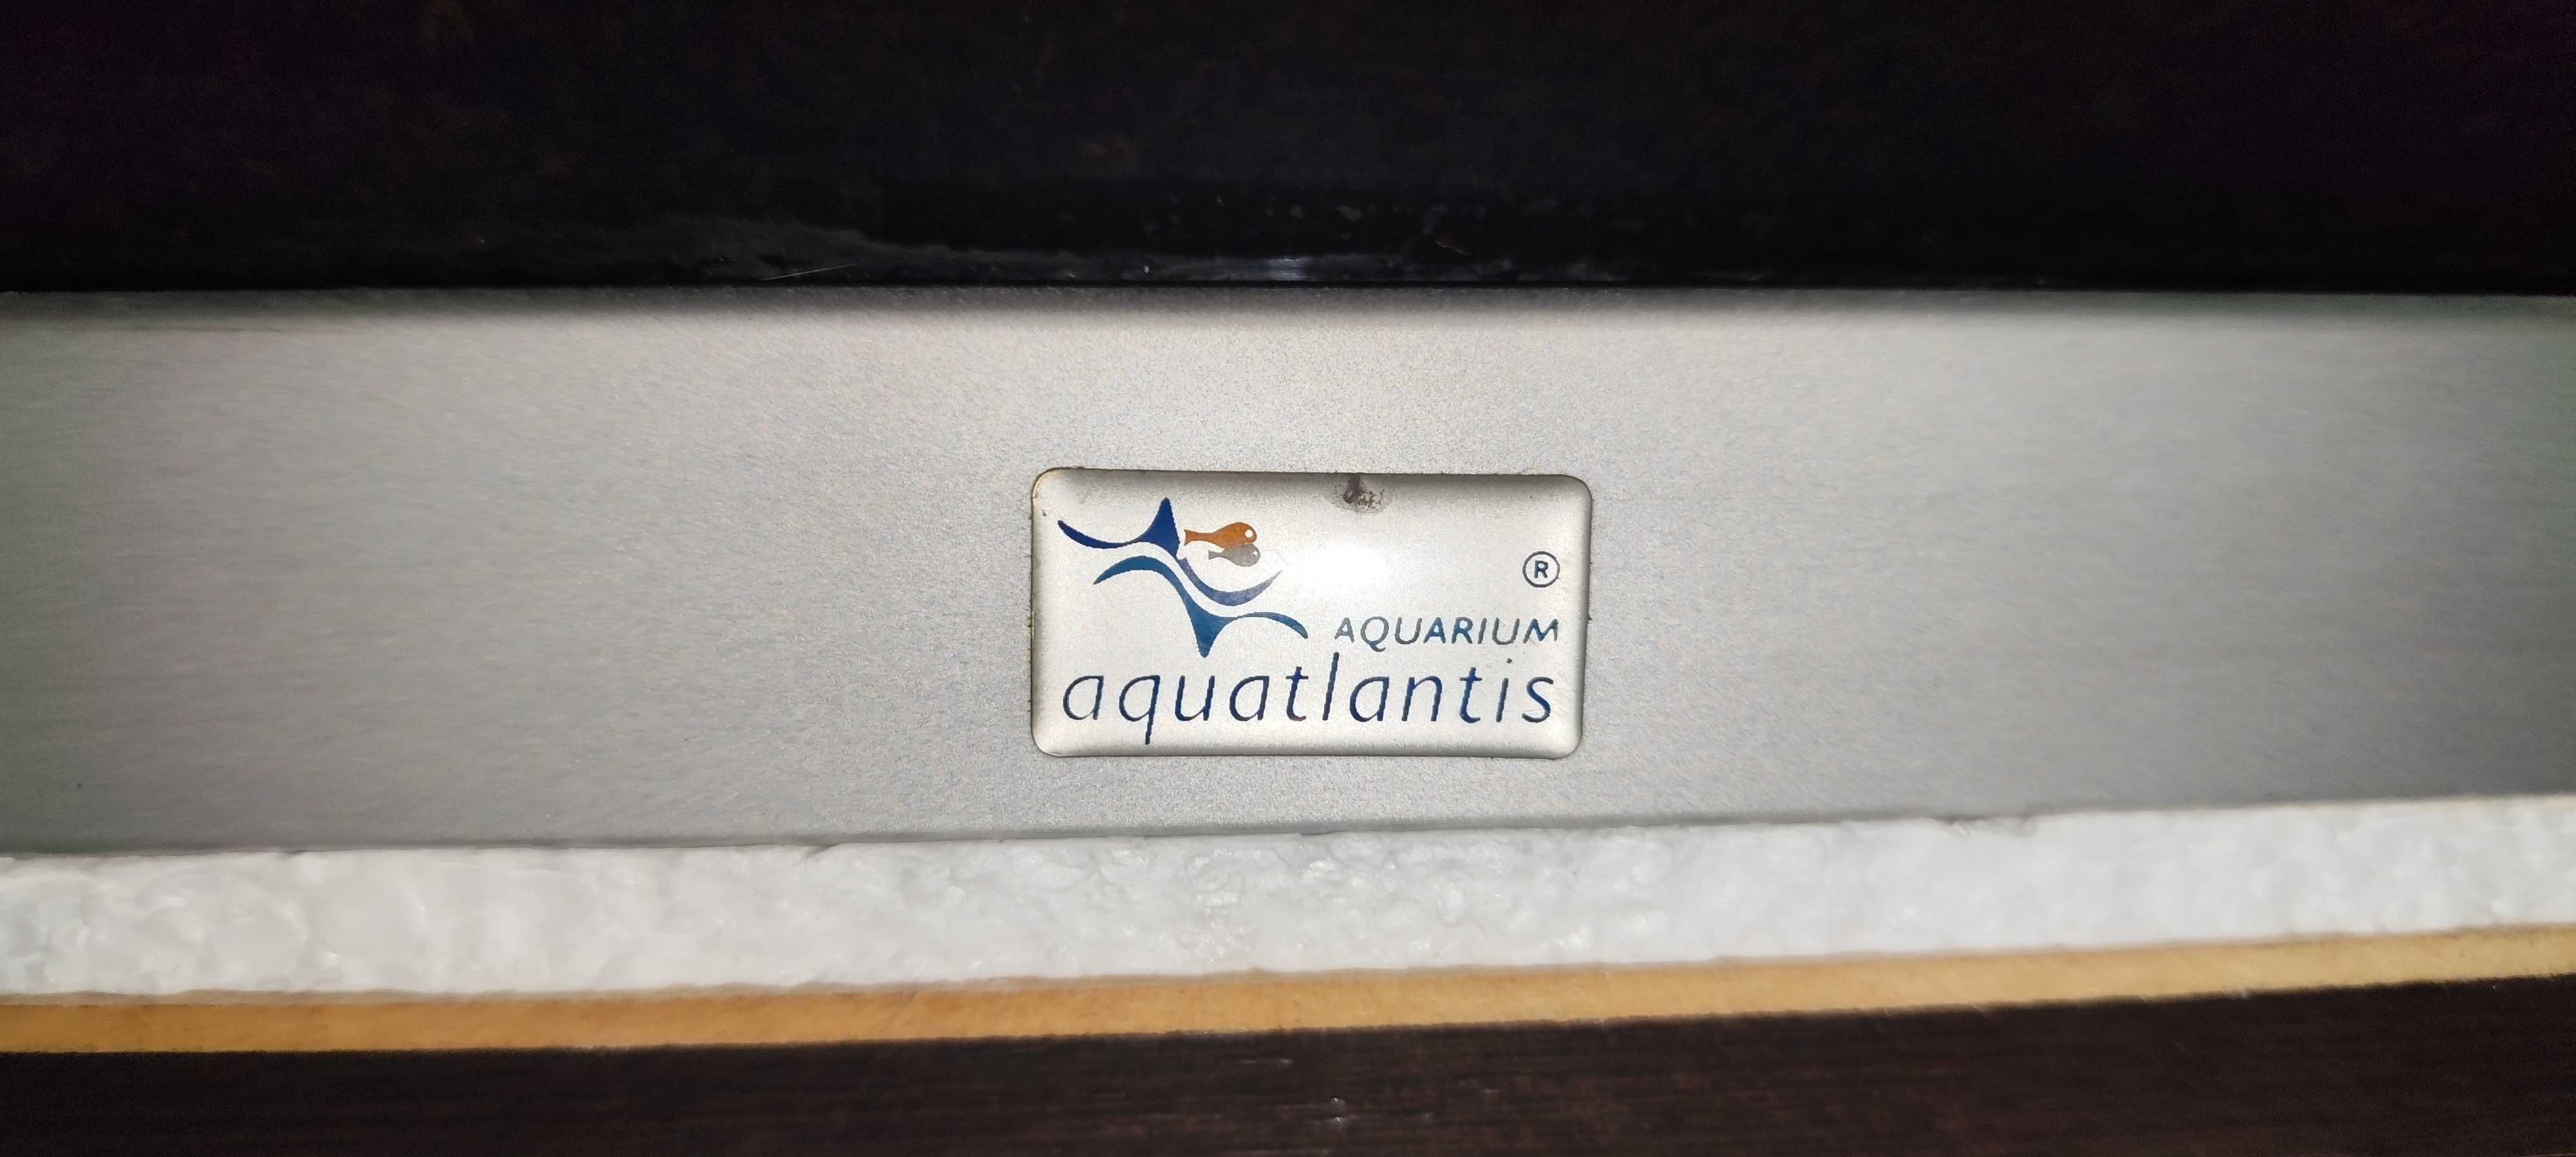 Vendo aquário aquatlantis completo 1,20 mt com ofertas